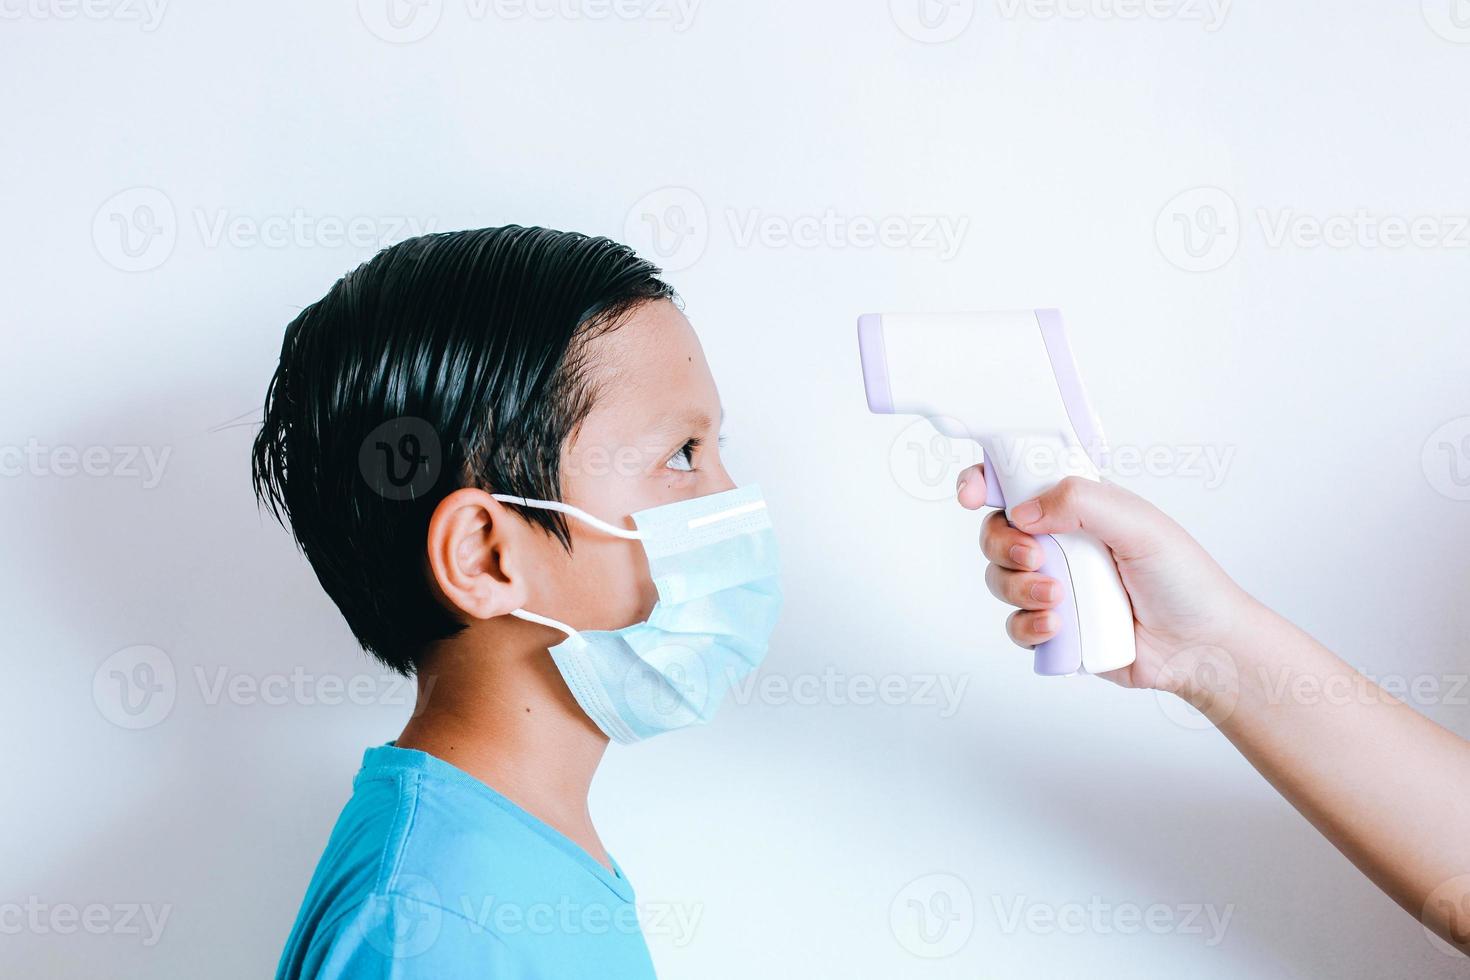 termometro a infrarossi con mano che misura la temperatura del ragazzo con maschera medica sul viso foto